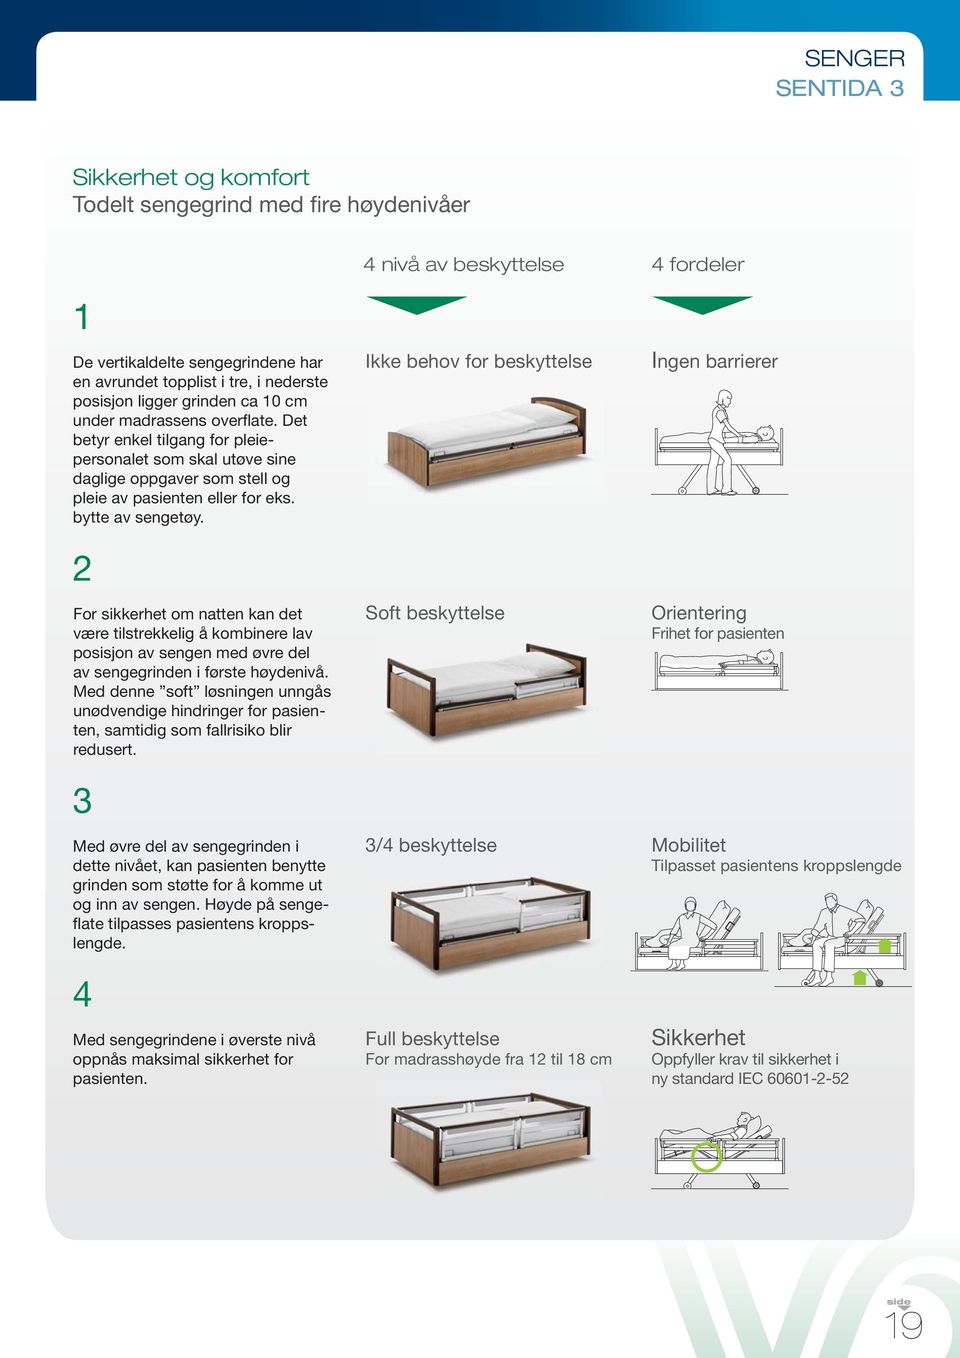 2 For sikkerhet om natten kan det være tilstrekkelig å kombinere lav posisjon av sengen med øvre del av sengegrinden i første høydenivå.